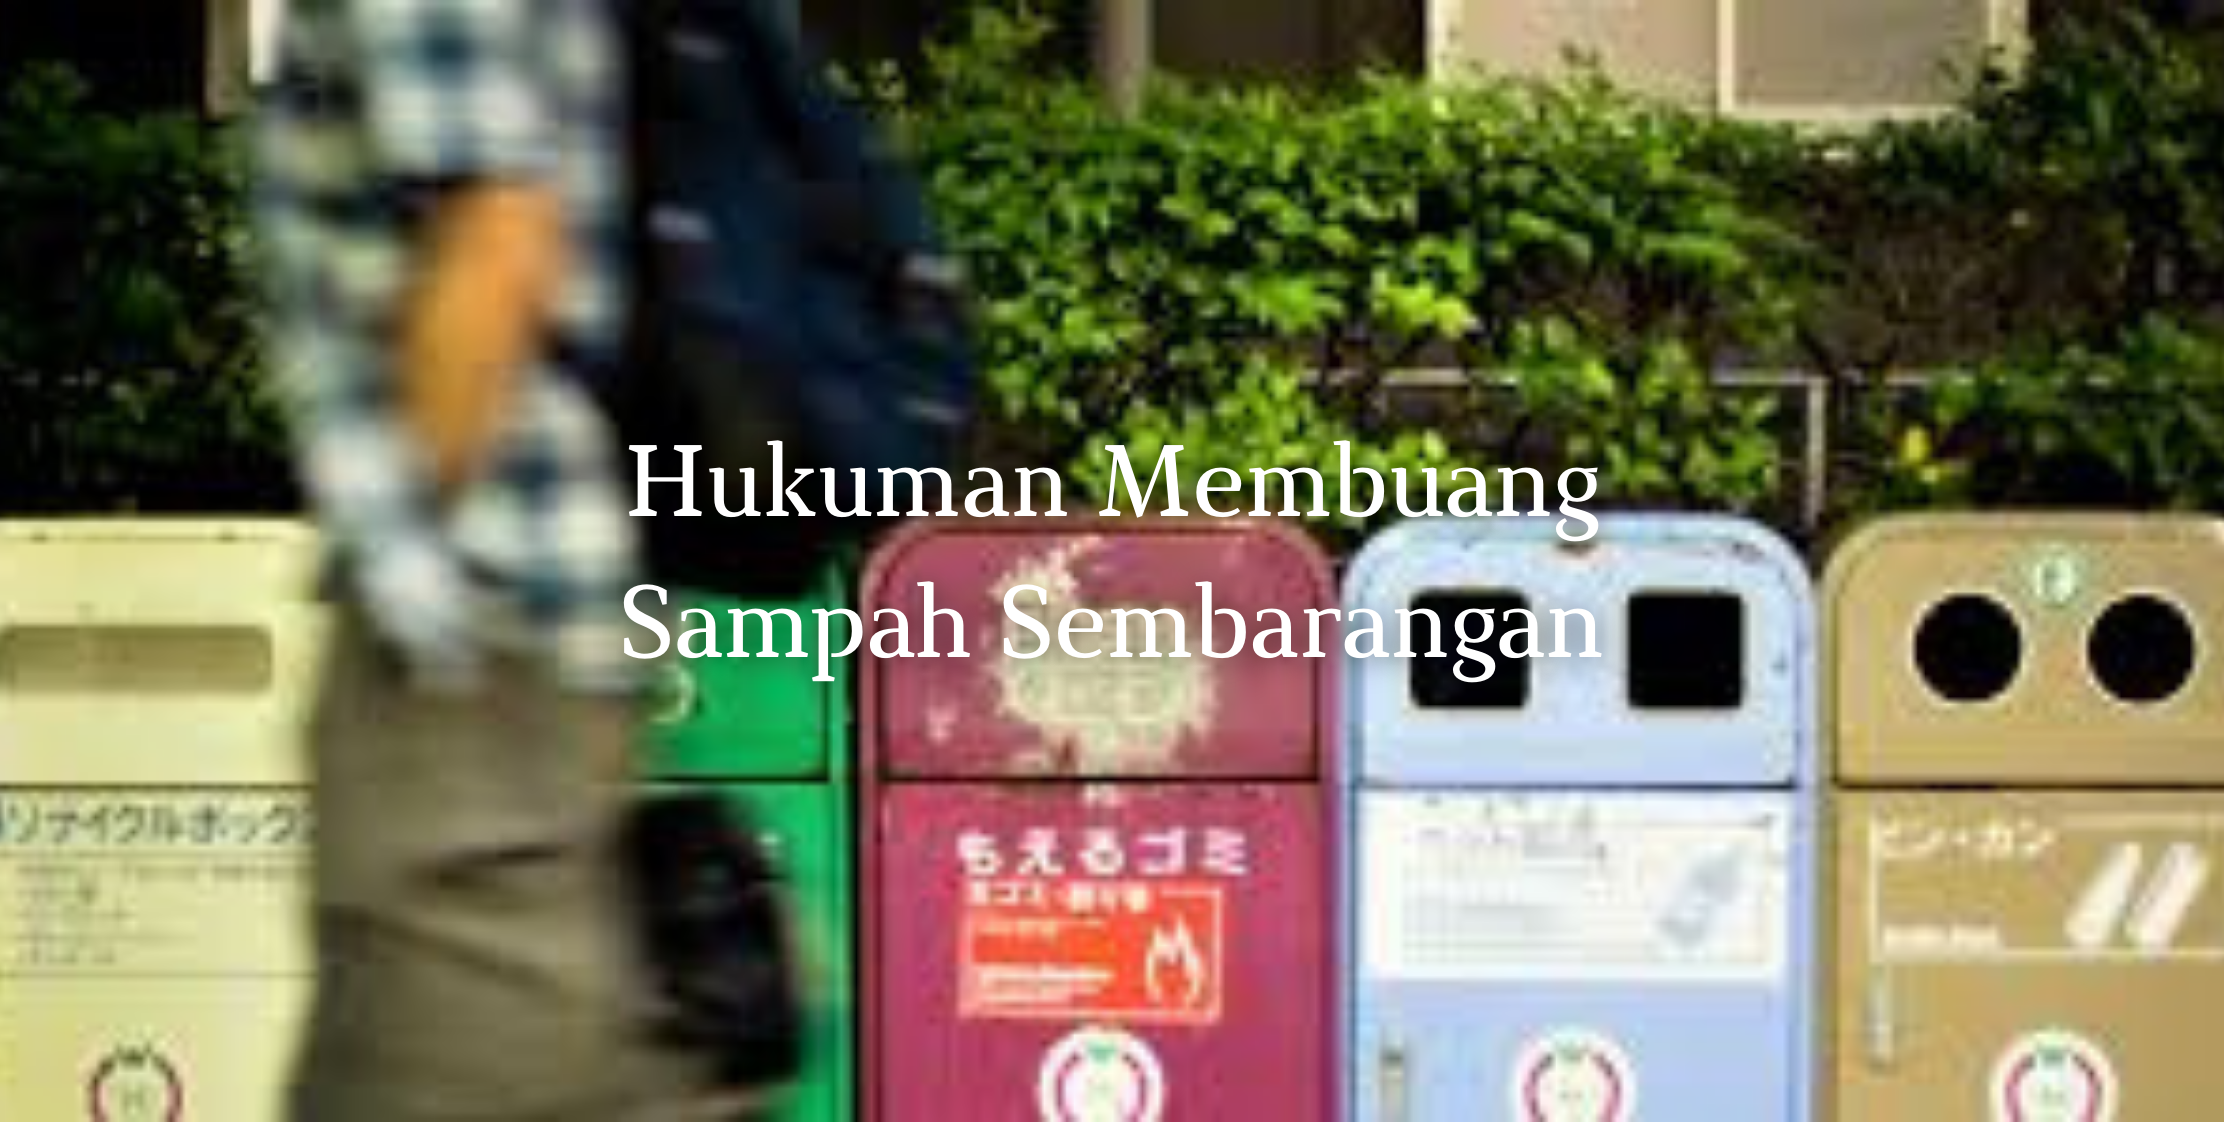 Hukuman Membuang Sampah Sembarangan di Indonesia, Jepang dan Singapura image